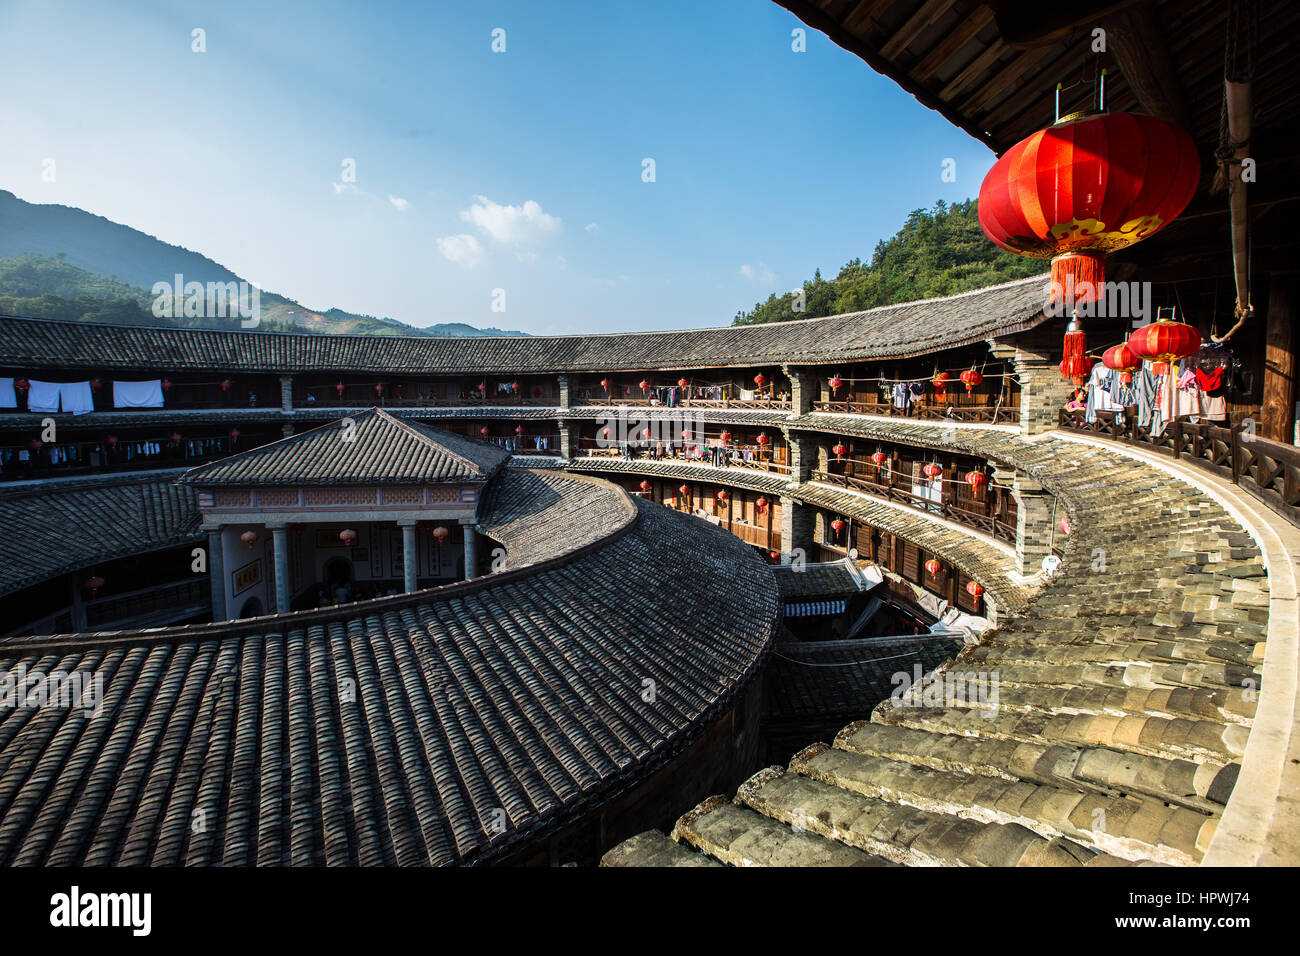 Fujian earth buildings in yongding Stock Photo